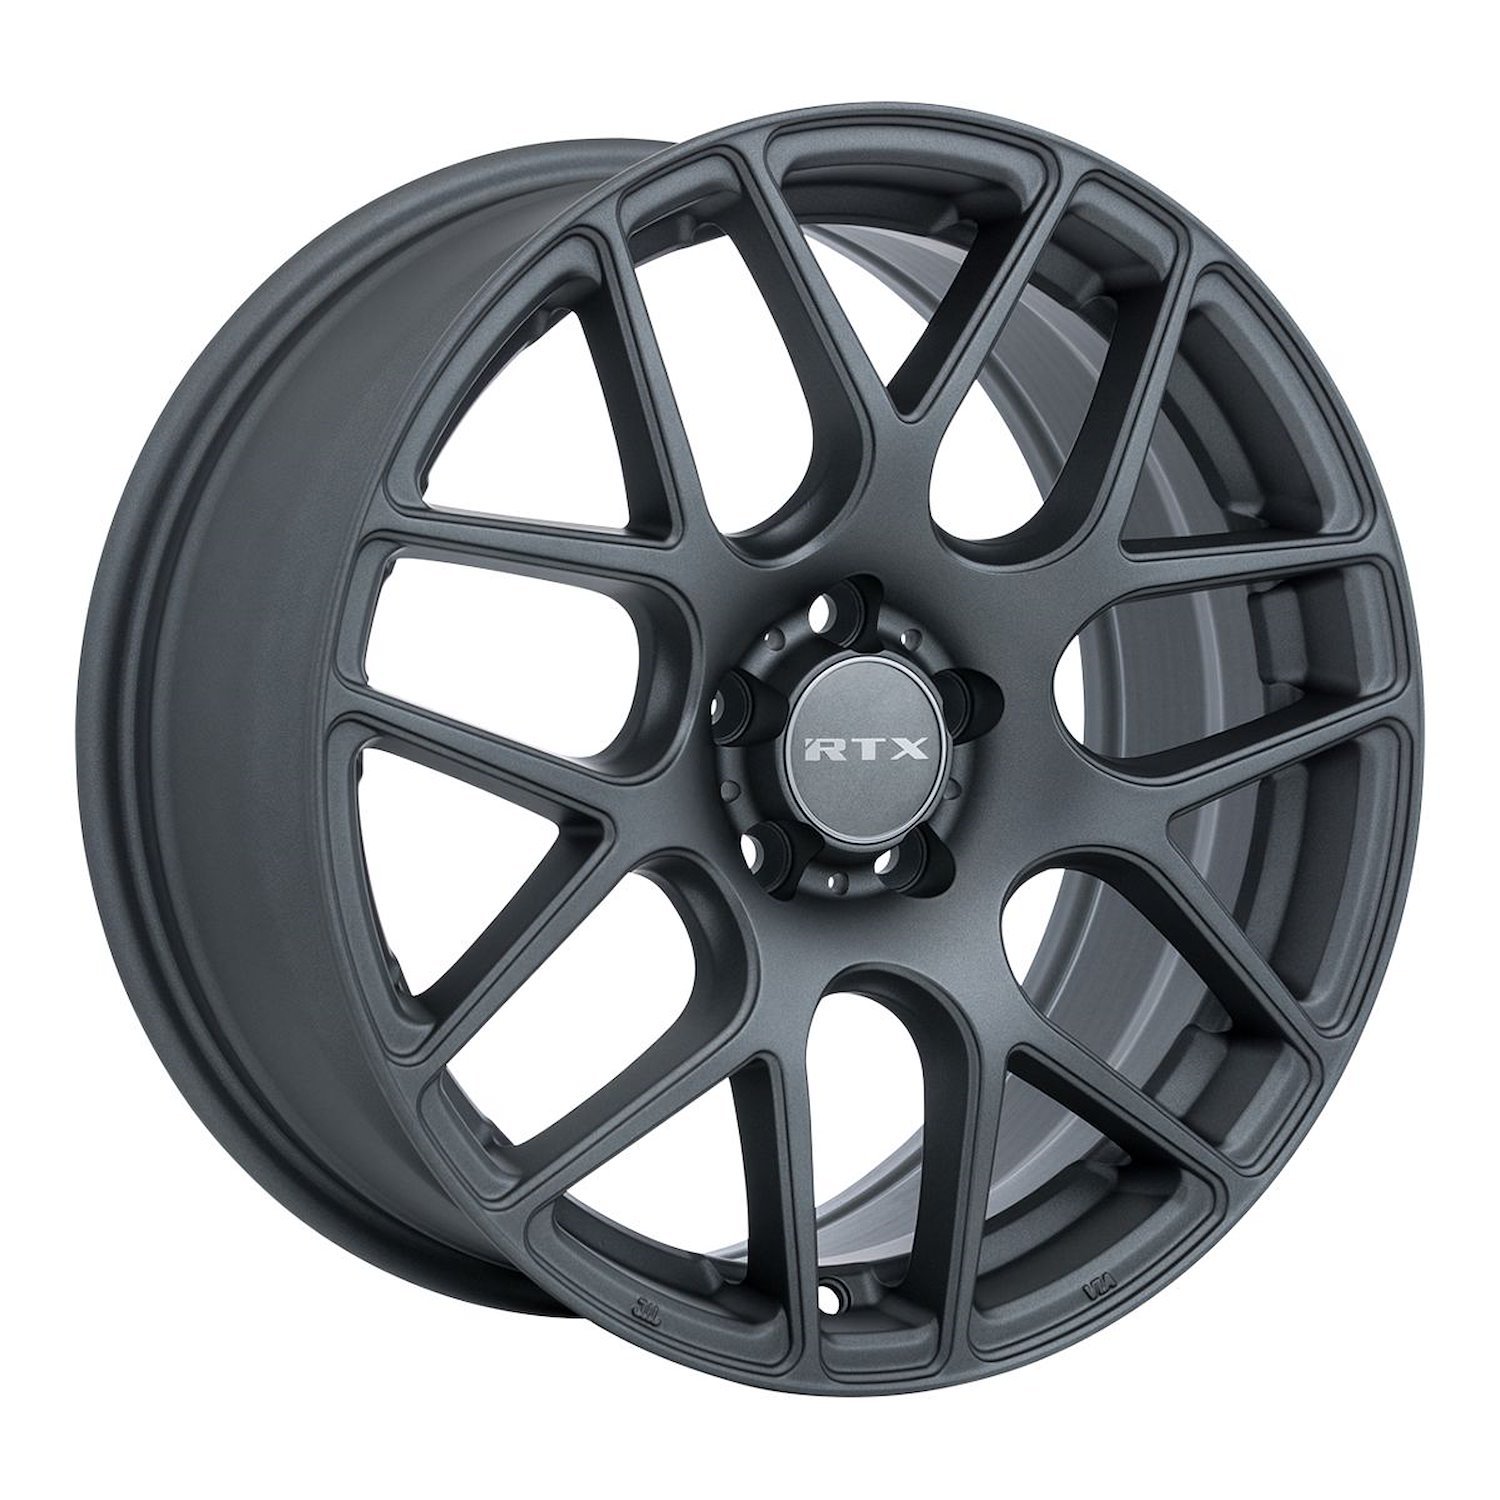 082787 RTX-Series Envy Wheel [Size: 18" x 8"] Matte Gunmetal Finish